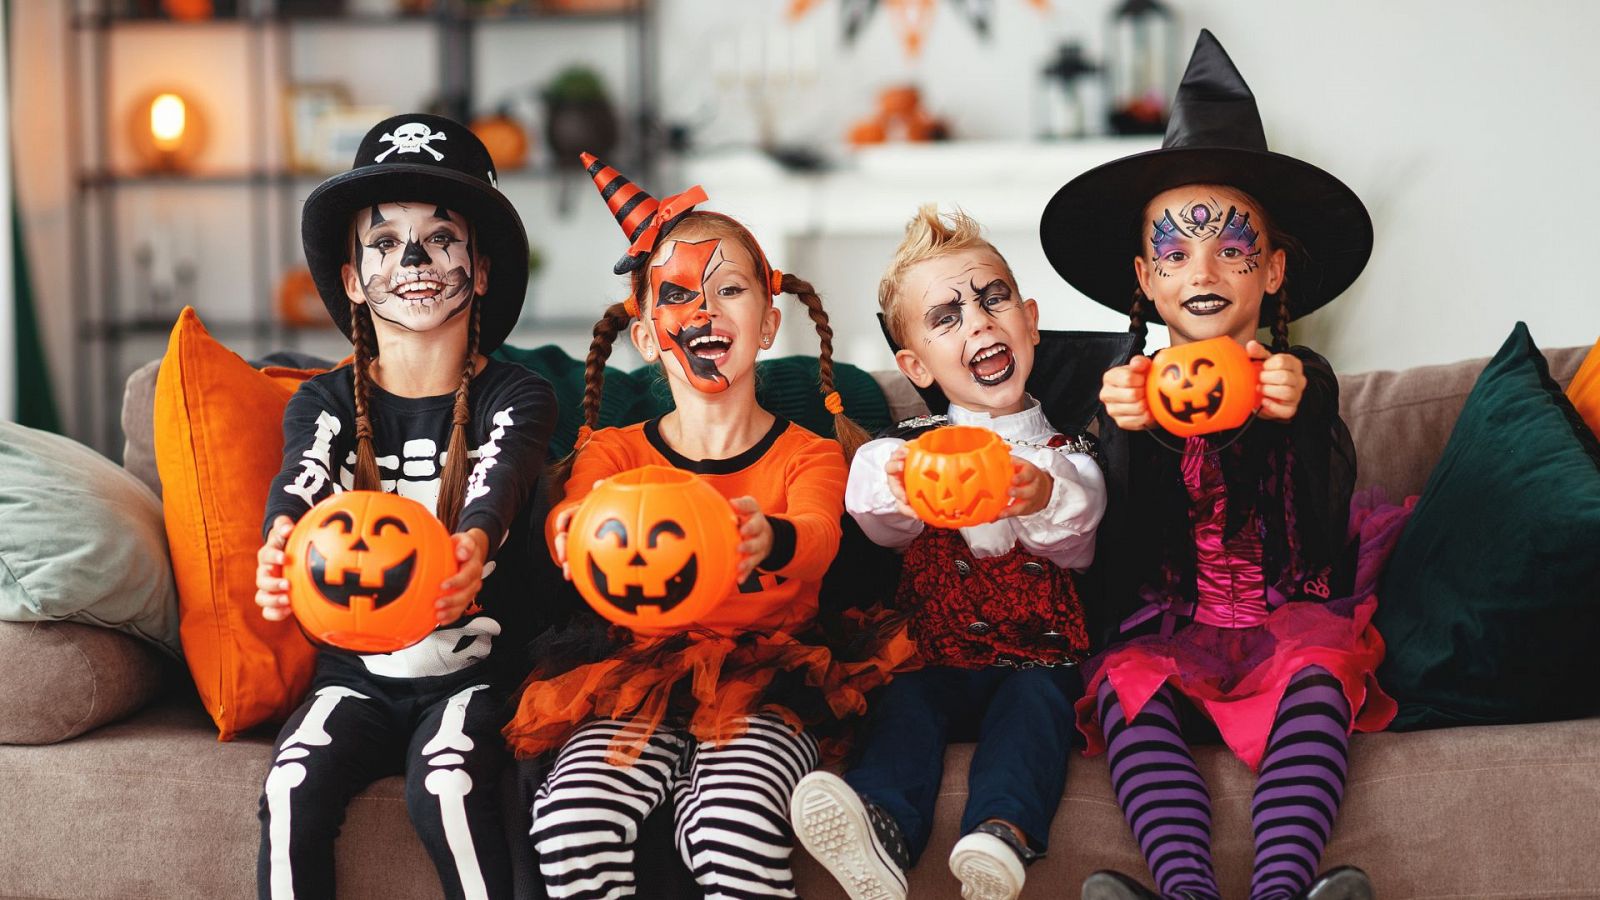 Un reciente estudio de la OCU detecta una amplia lista de riesgos en disfraces de Halloween - Ver ahora